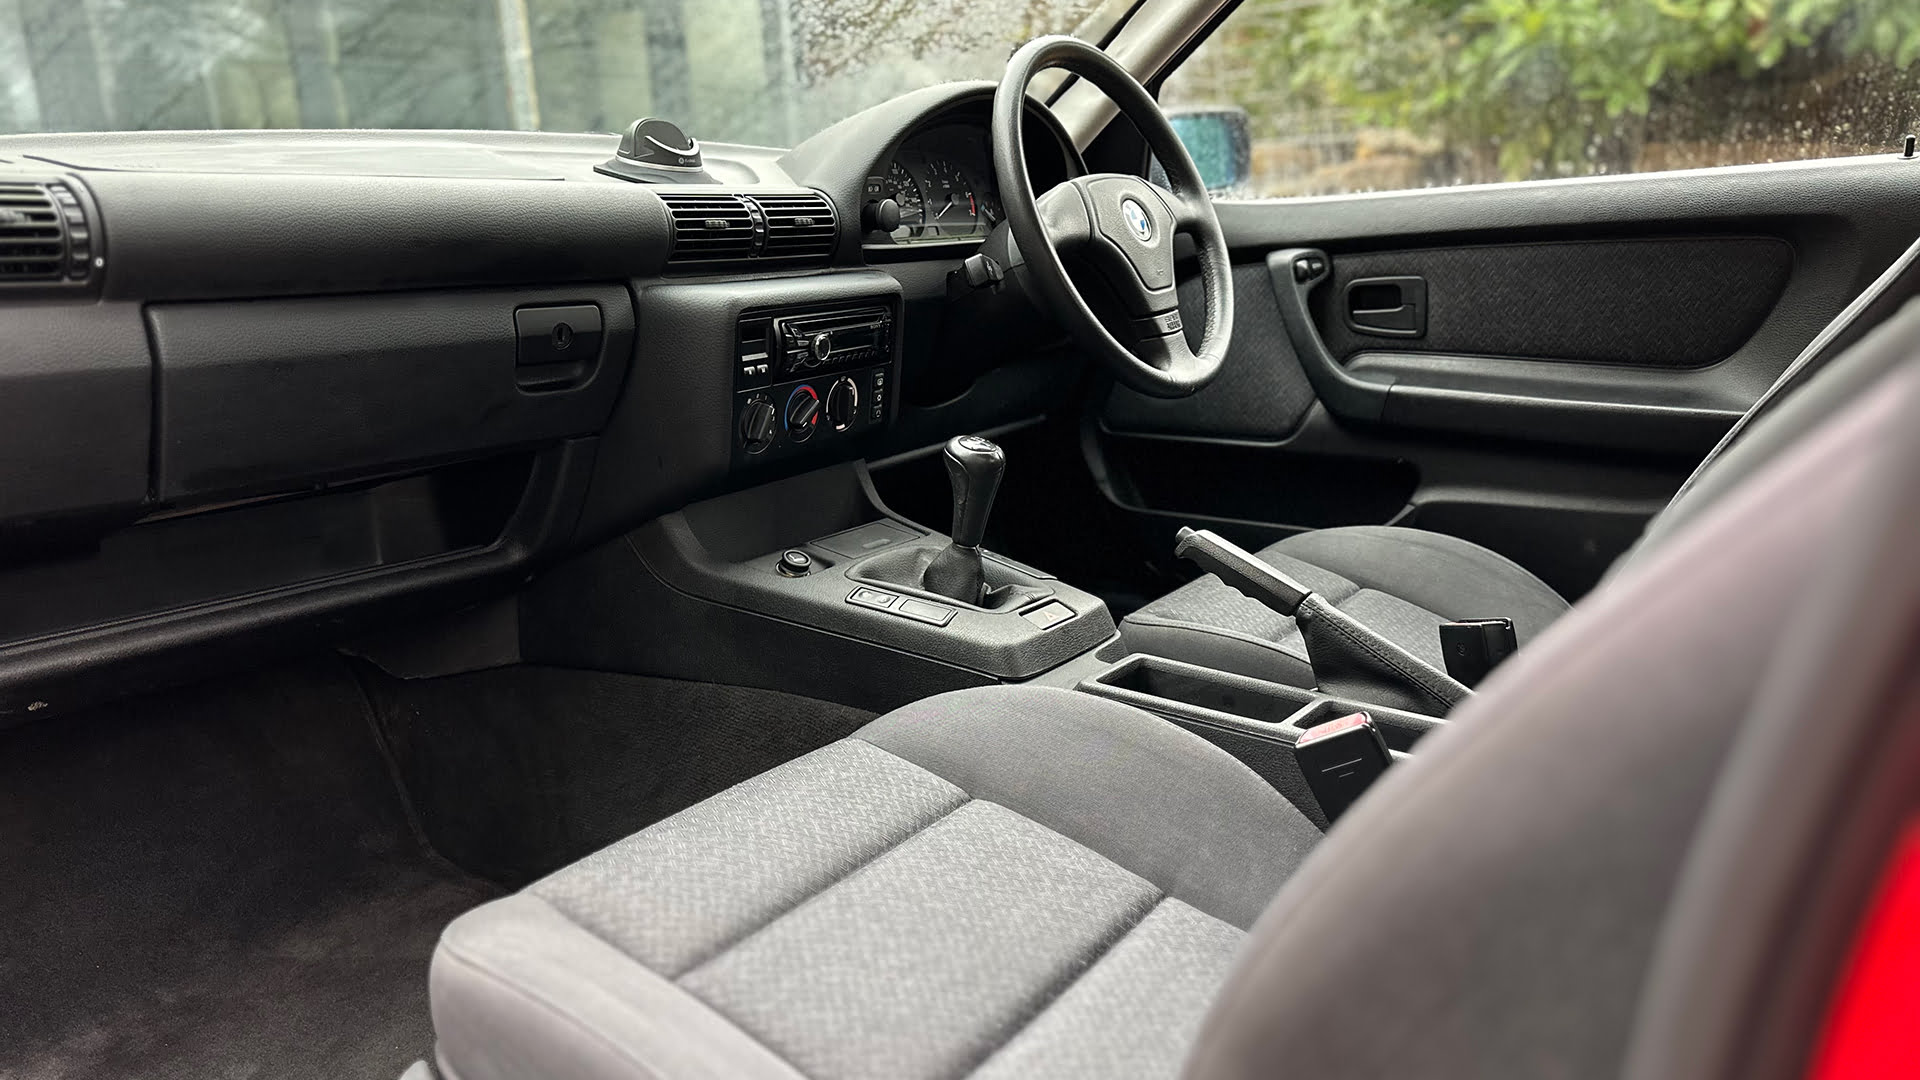 E36 BMW Compact interior